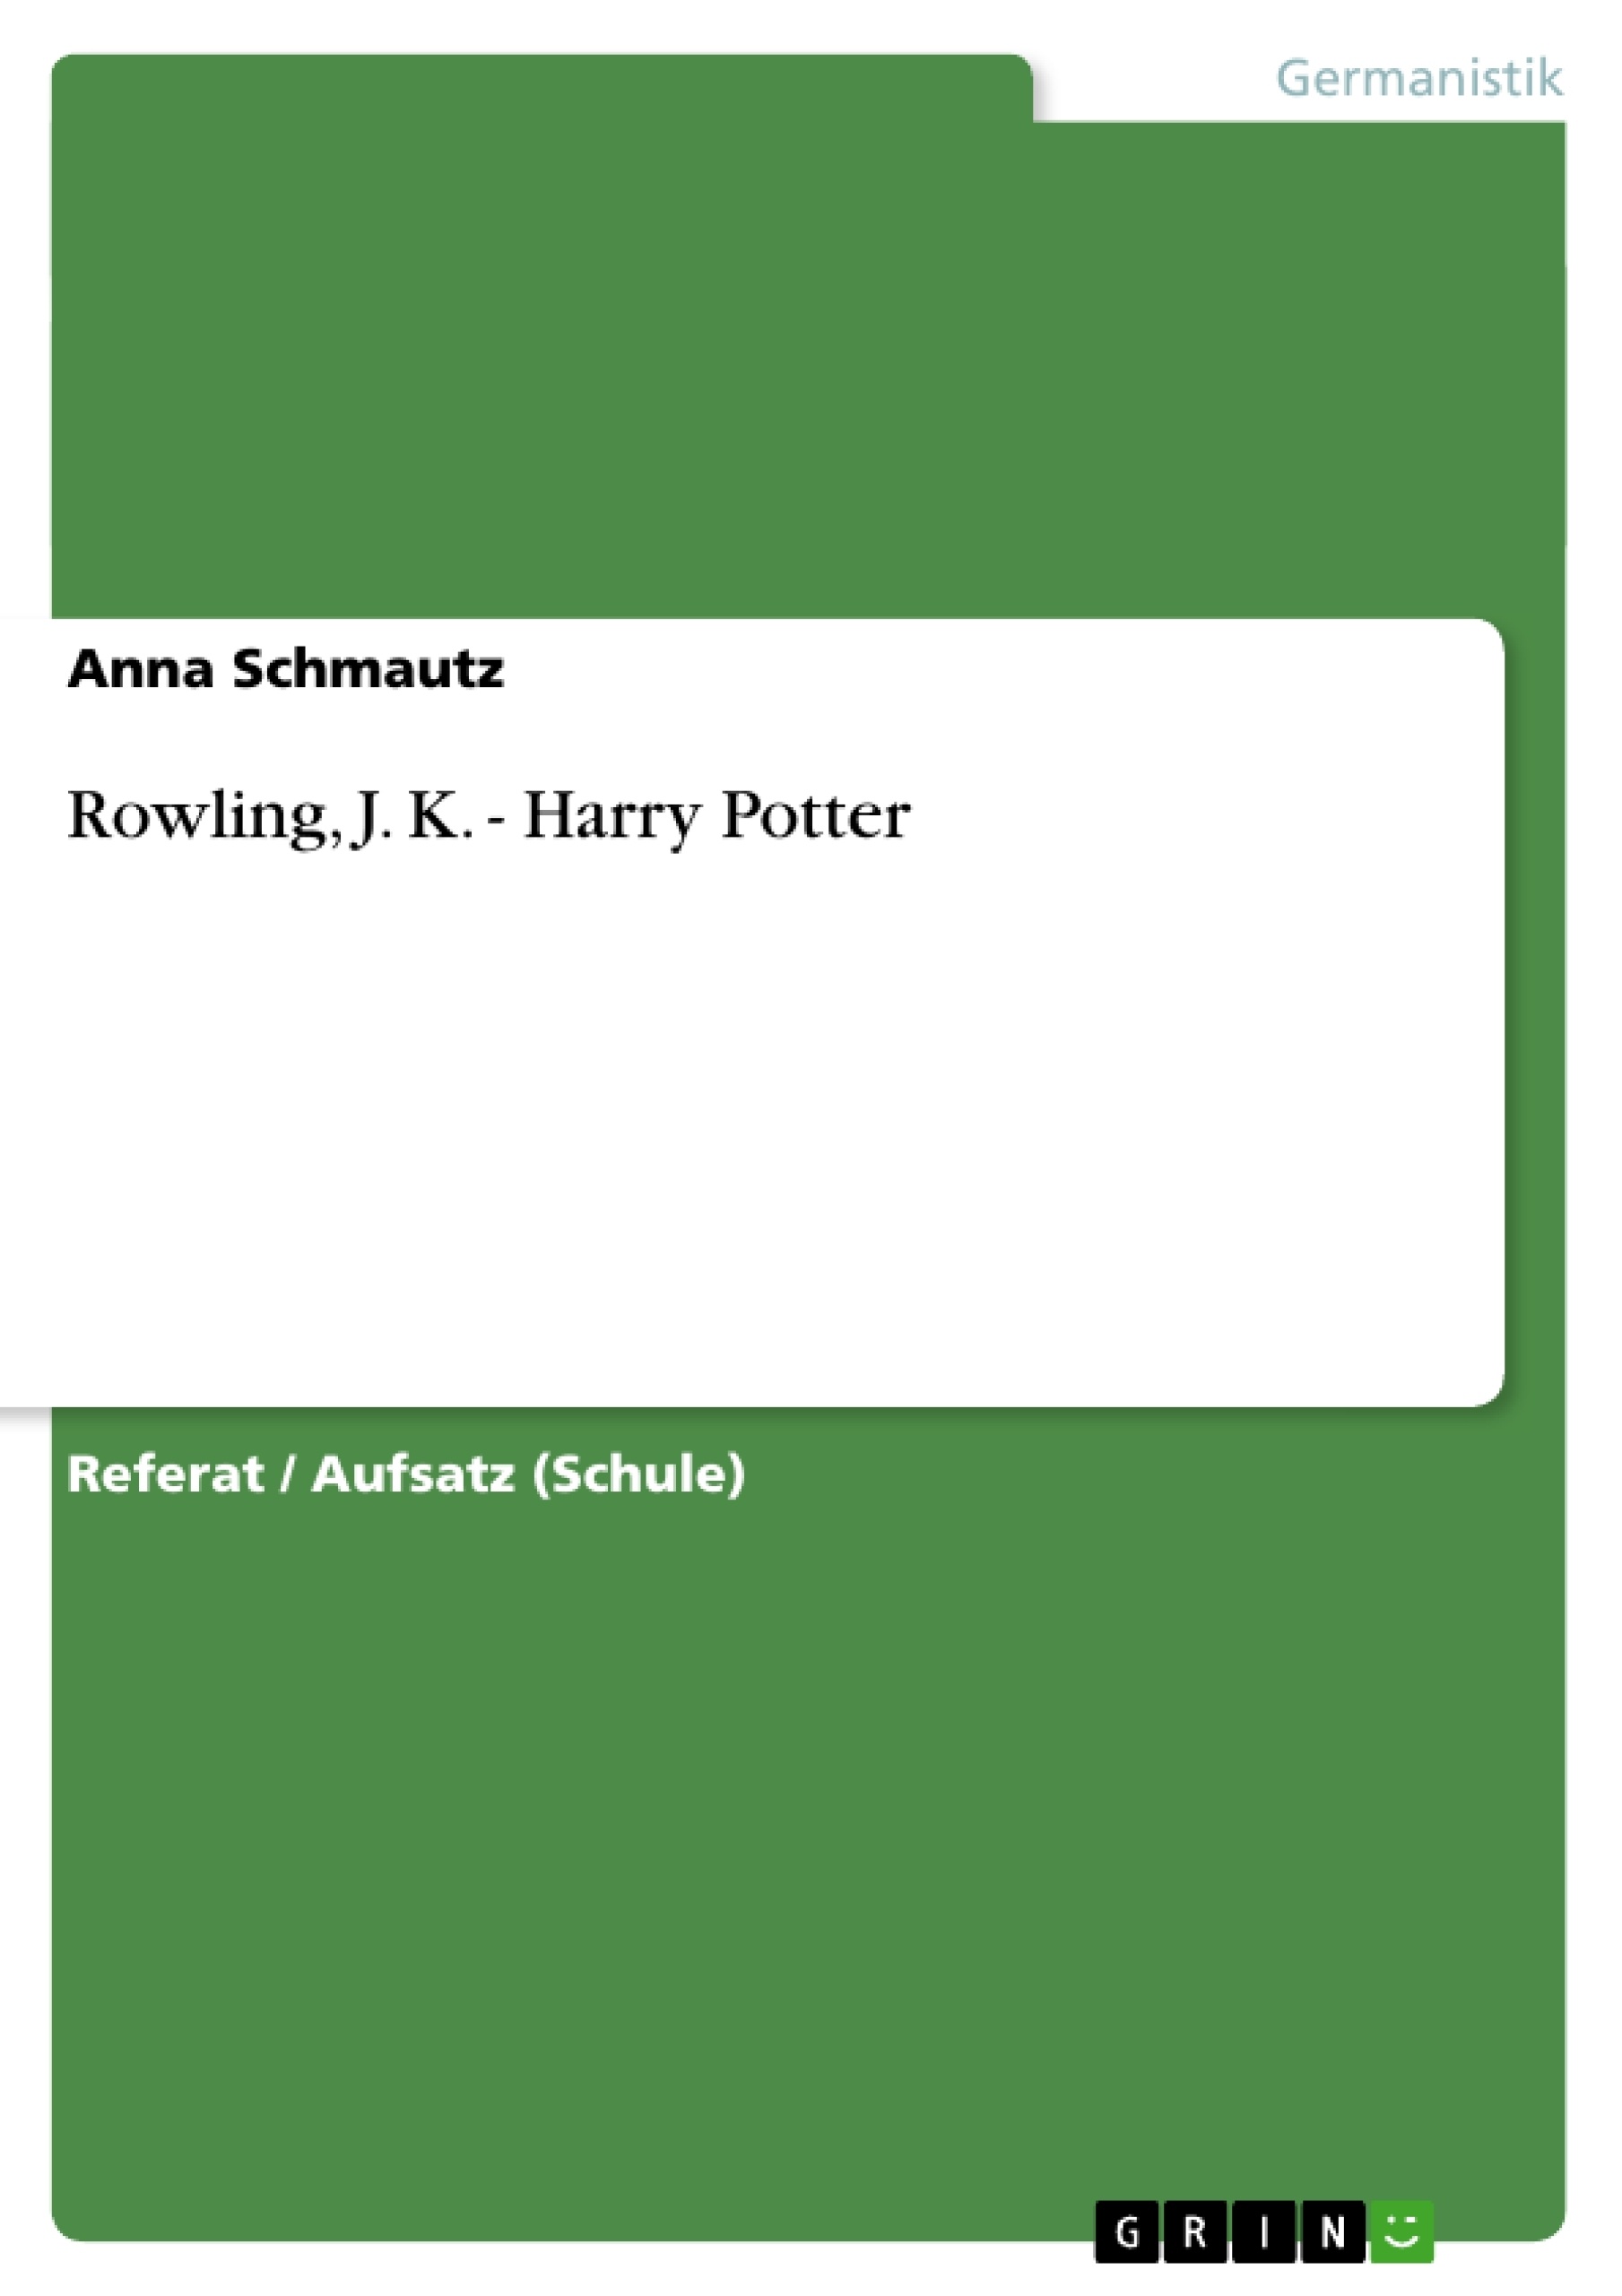 Título: Rowling, J. K. - Harry Potter